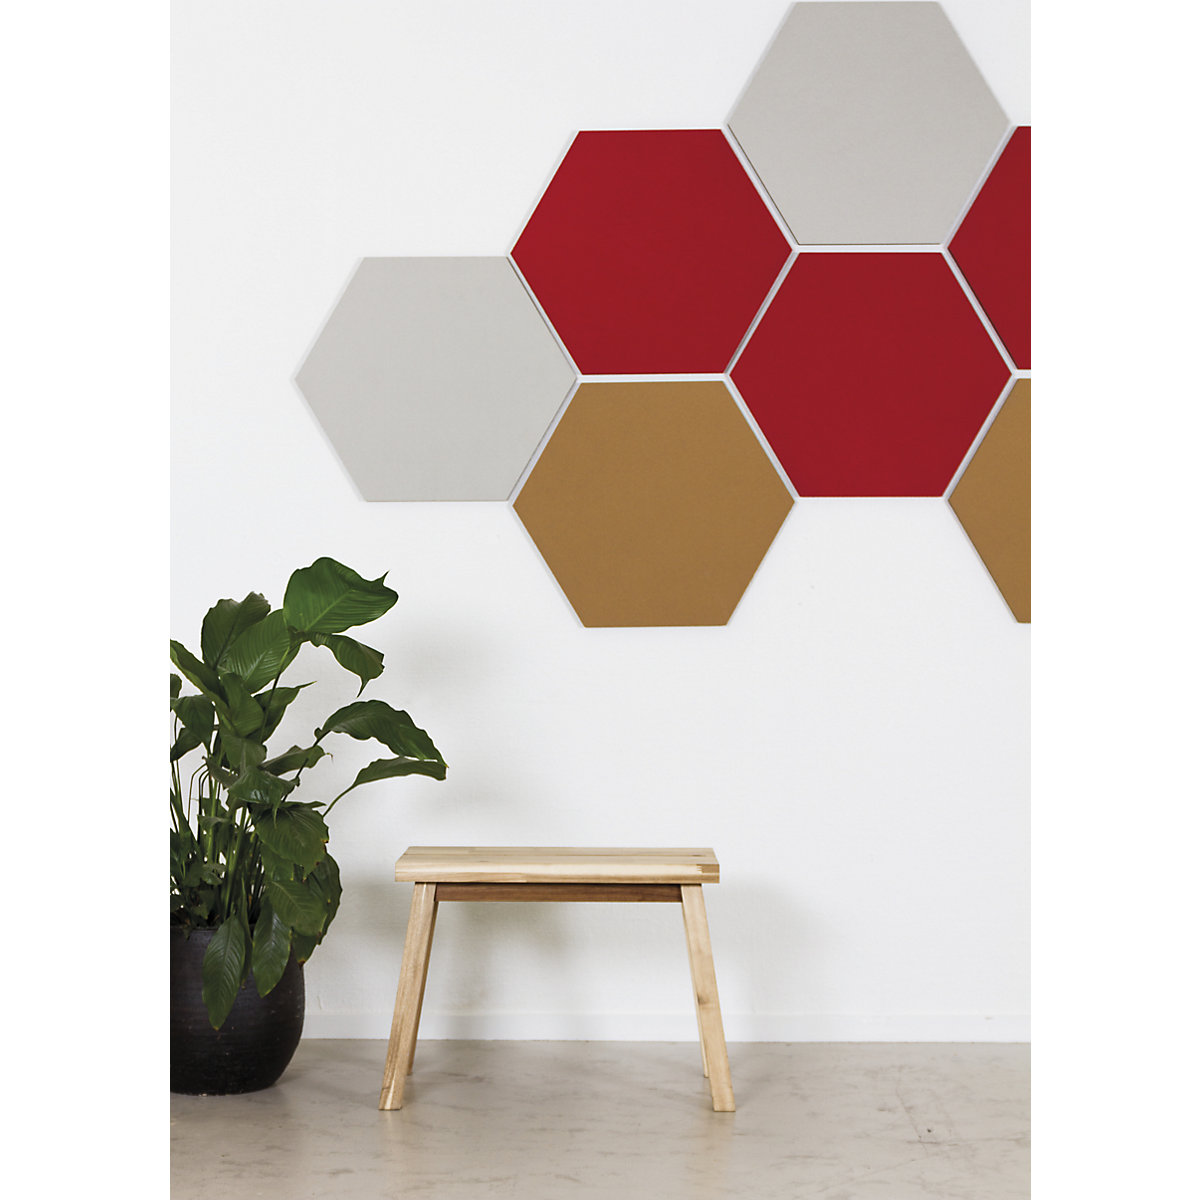 Hexagonal designer pin board – Chameleon (Product illustration 6)-5